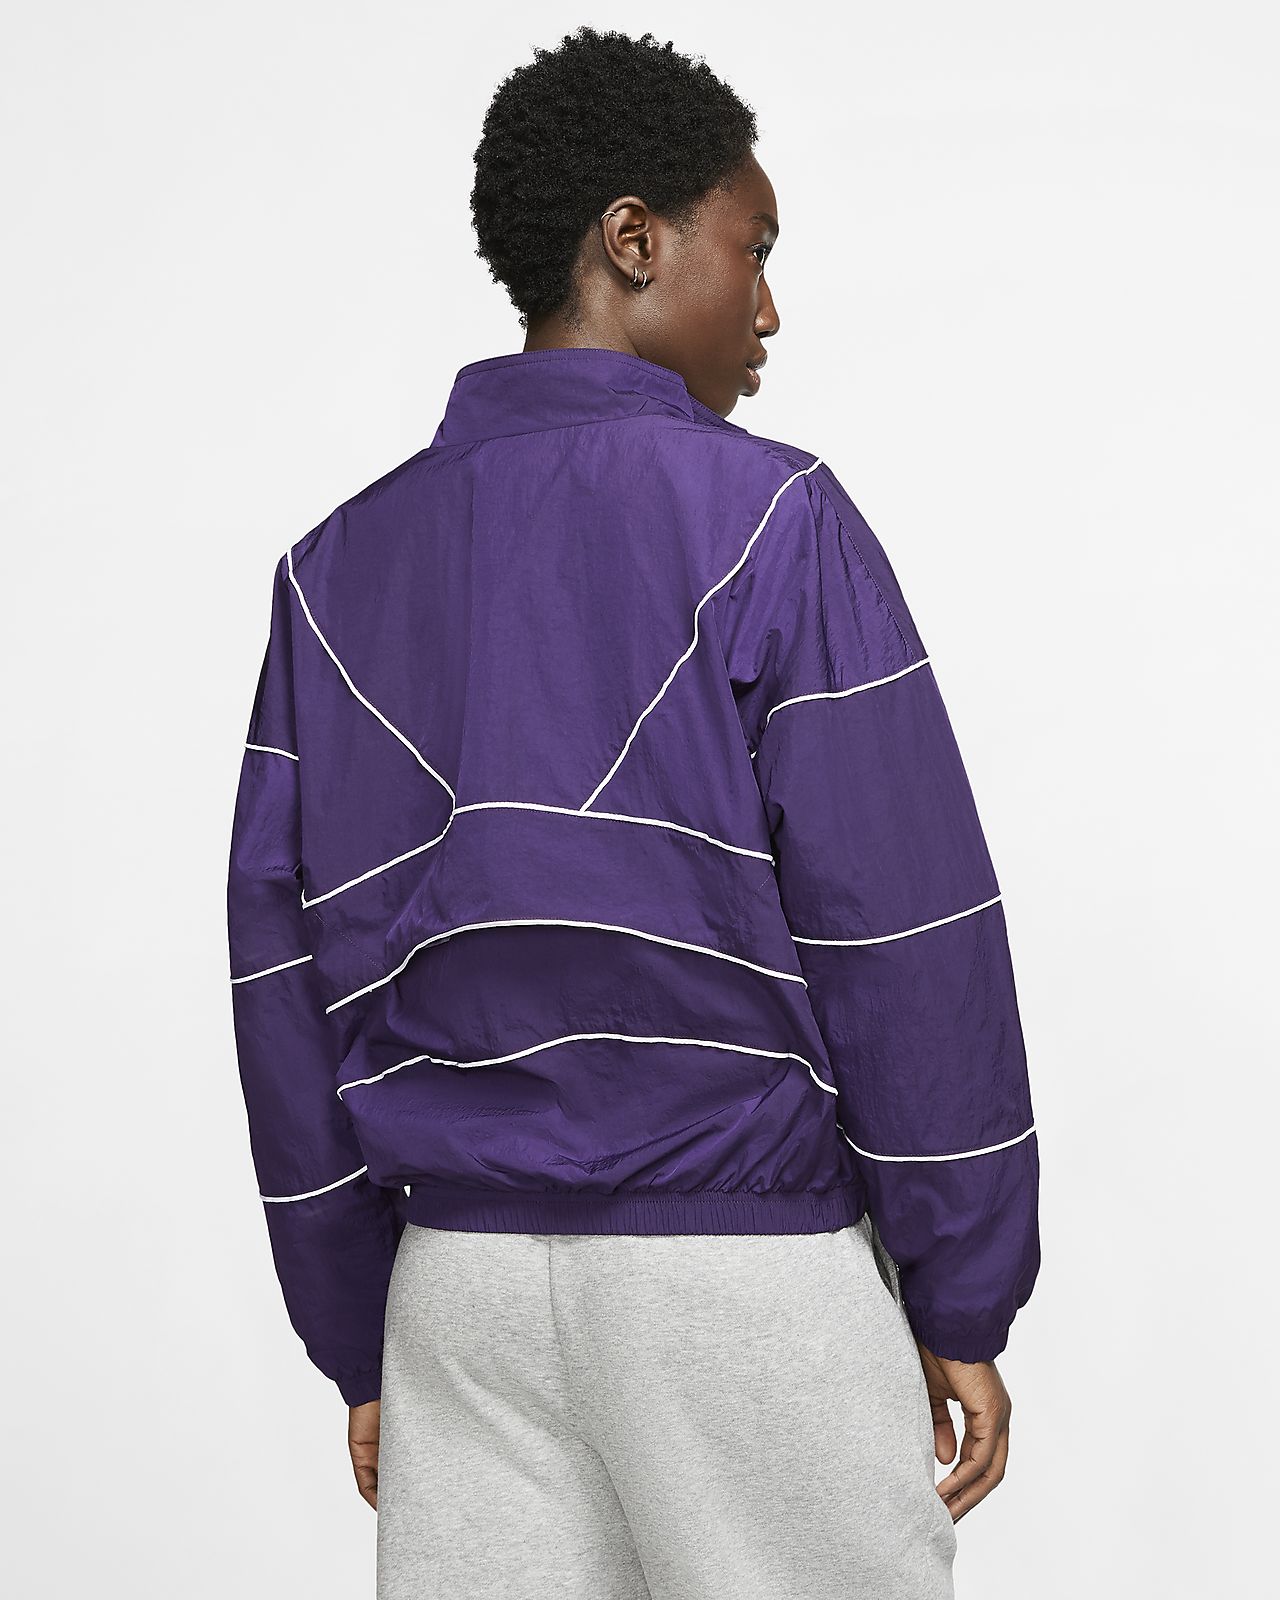 purple jacket nike